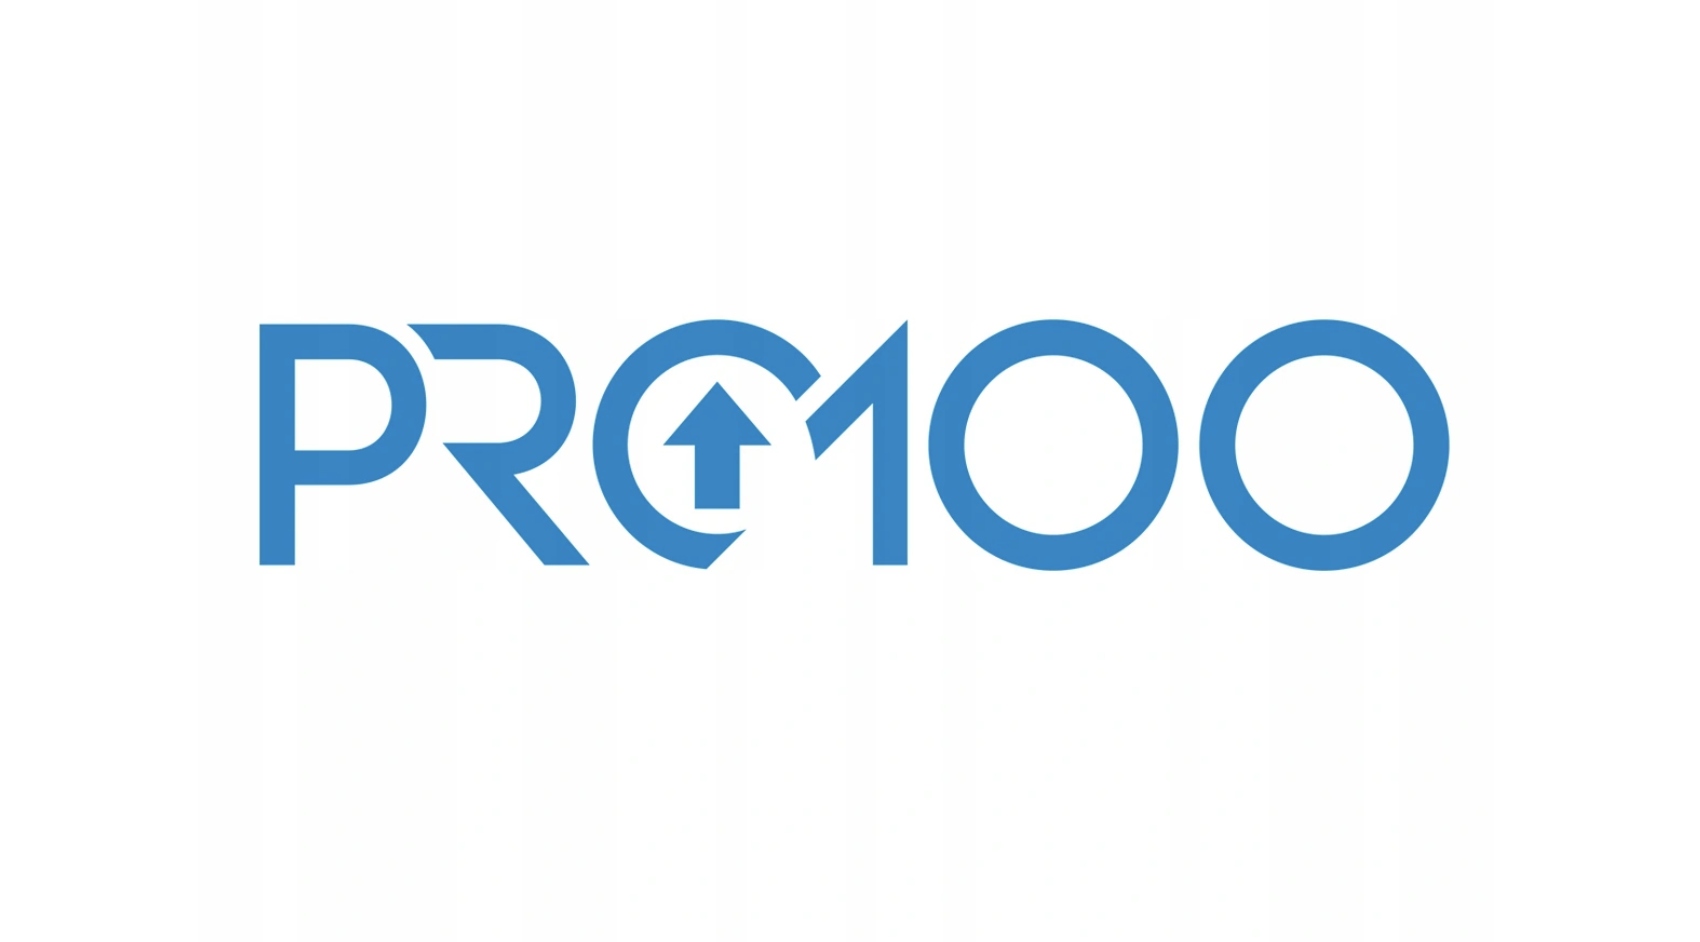 V c pro. Pro100 логотип. 100 Логотип. Pro100 6 лого. Pro100 программа.